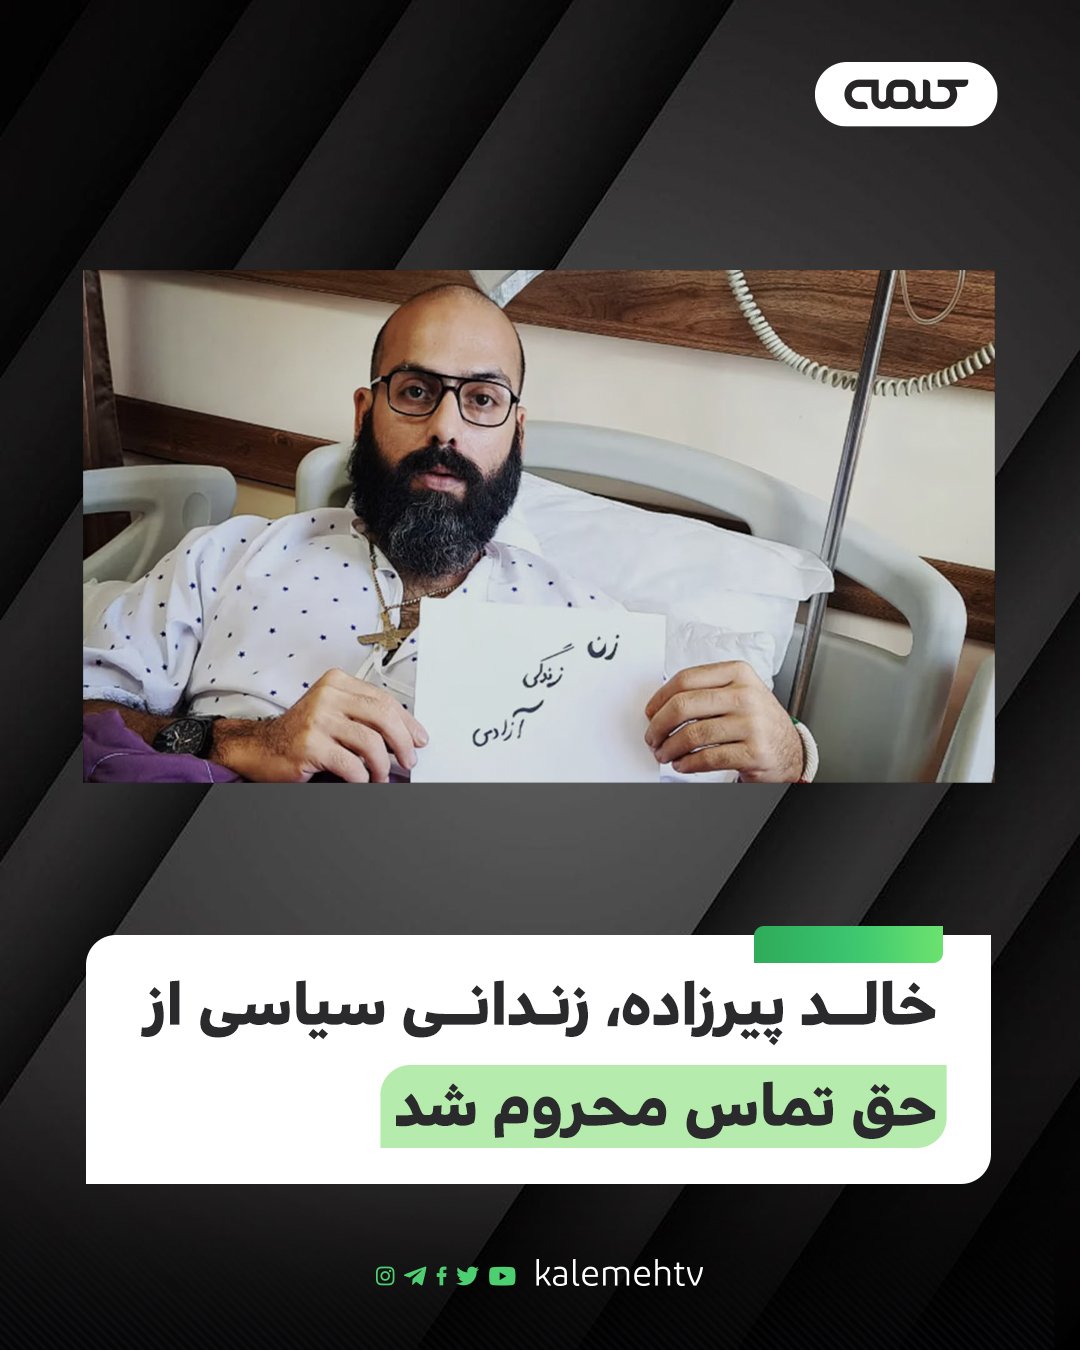 خالد پیرزاده حق تماس